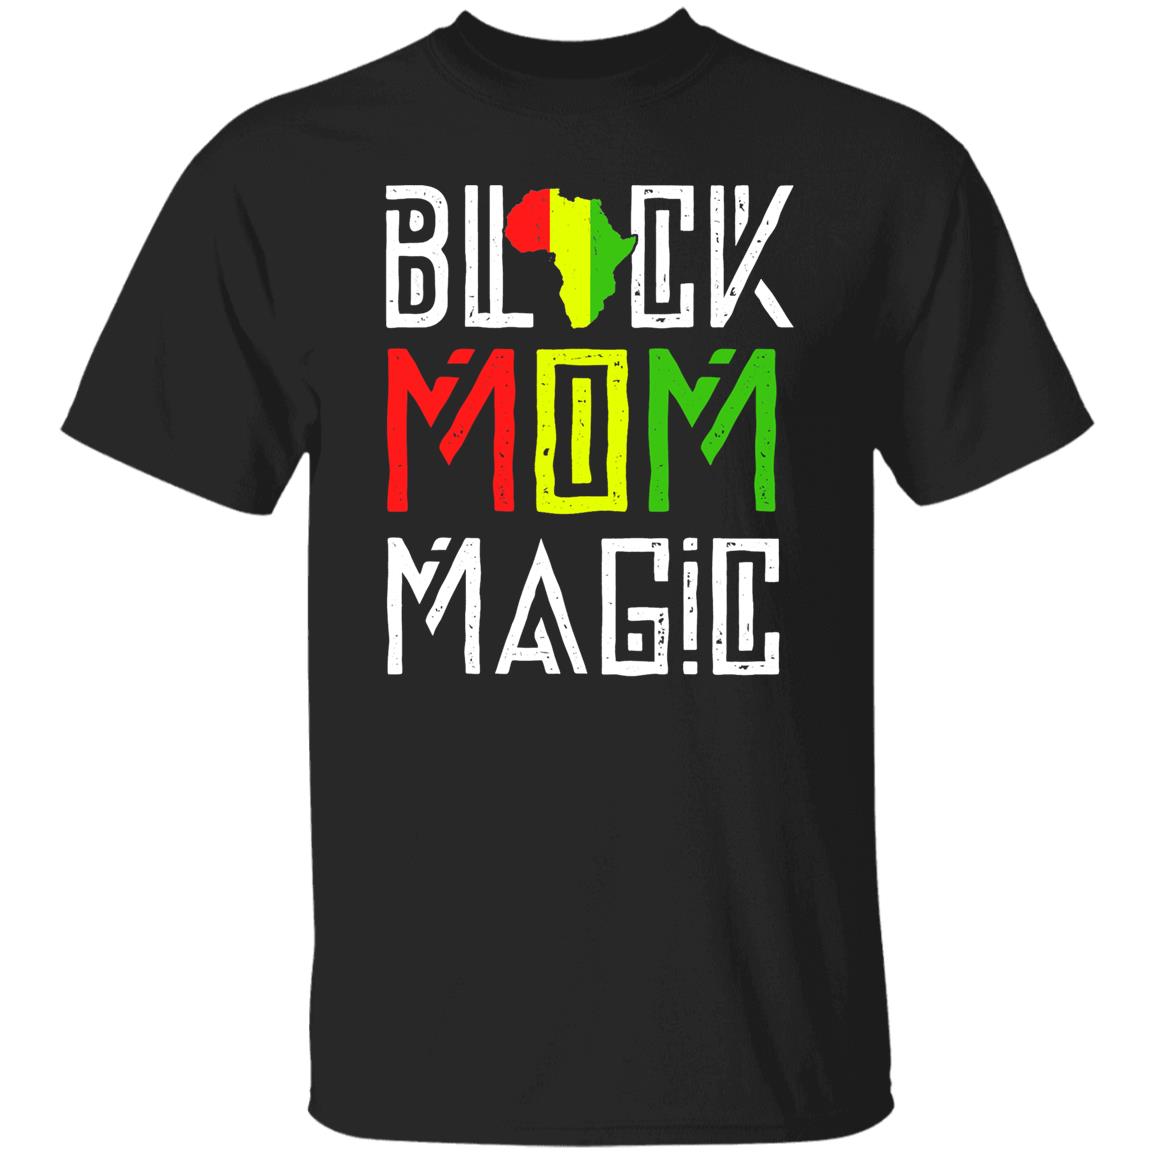 Black Mom Matter Shirt for Mom Black History Gift